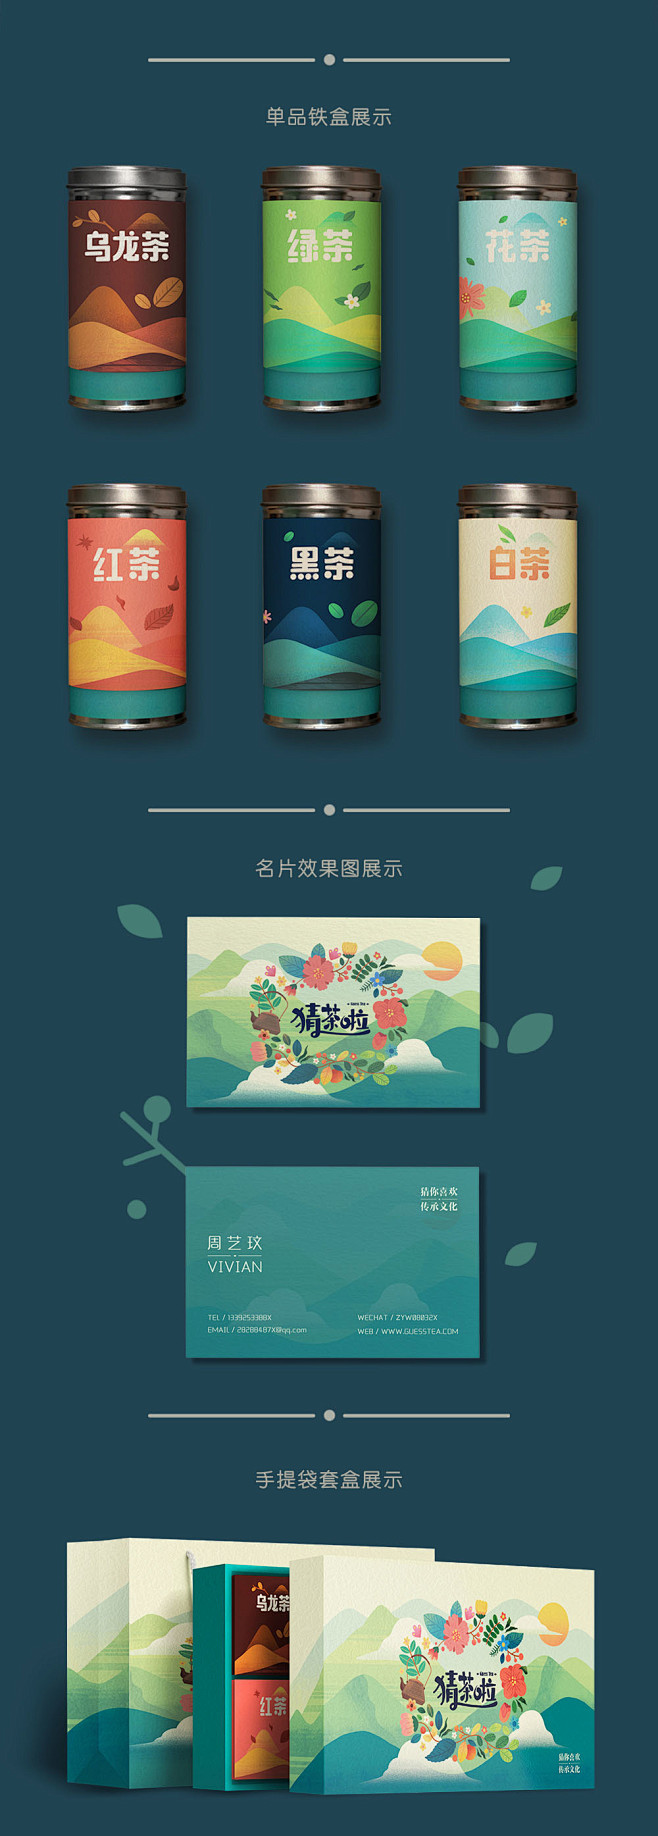 猜茶啦茶品牌包装设计-中国设计在线